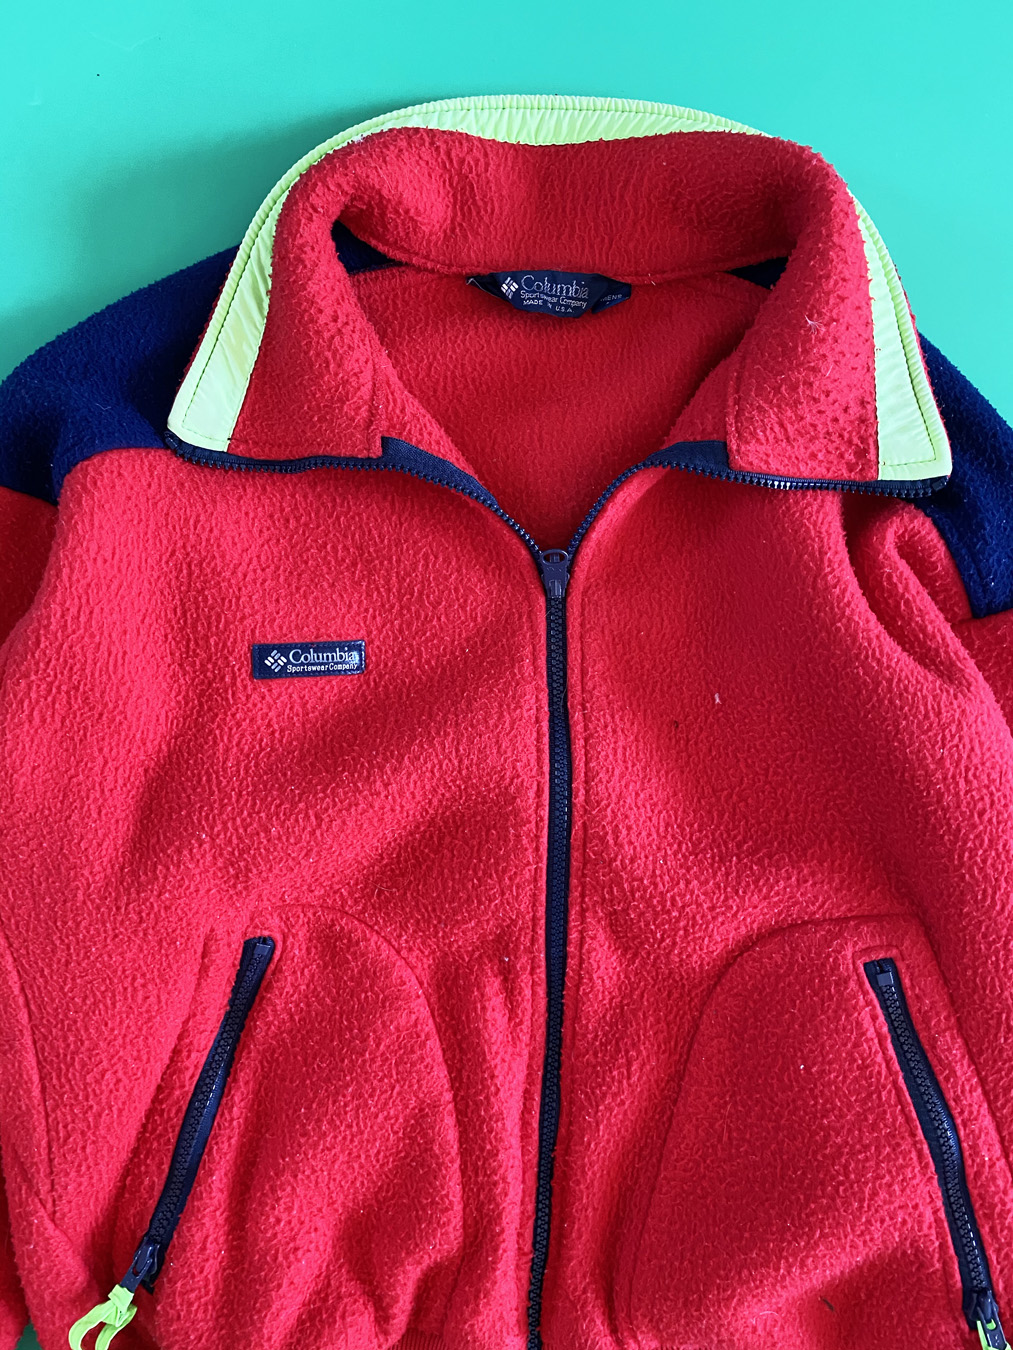 90s Columbia Fleece Red Zip Sweater Medium - 5 Star Vintage